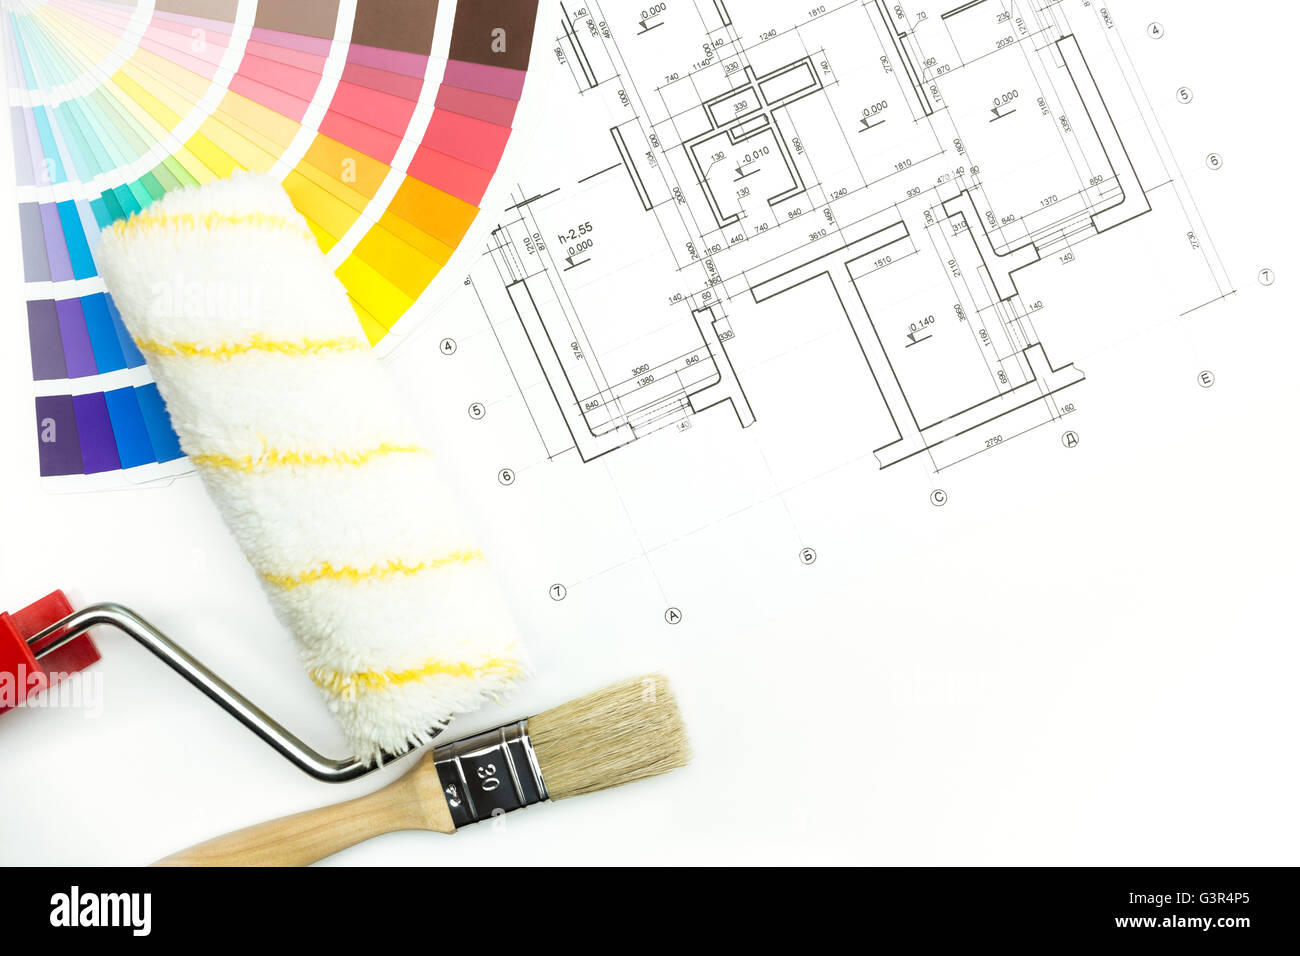 Malen Sie Walze, Pinsel und Farbe Führer auf Bauzeichnungen Hintergrund Stockfoto